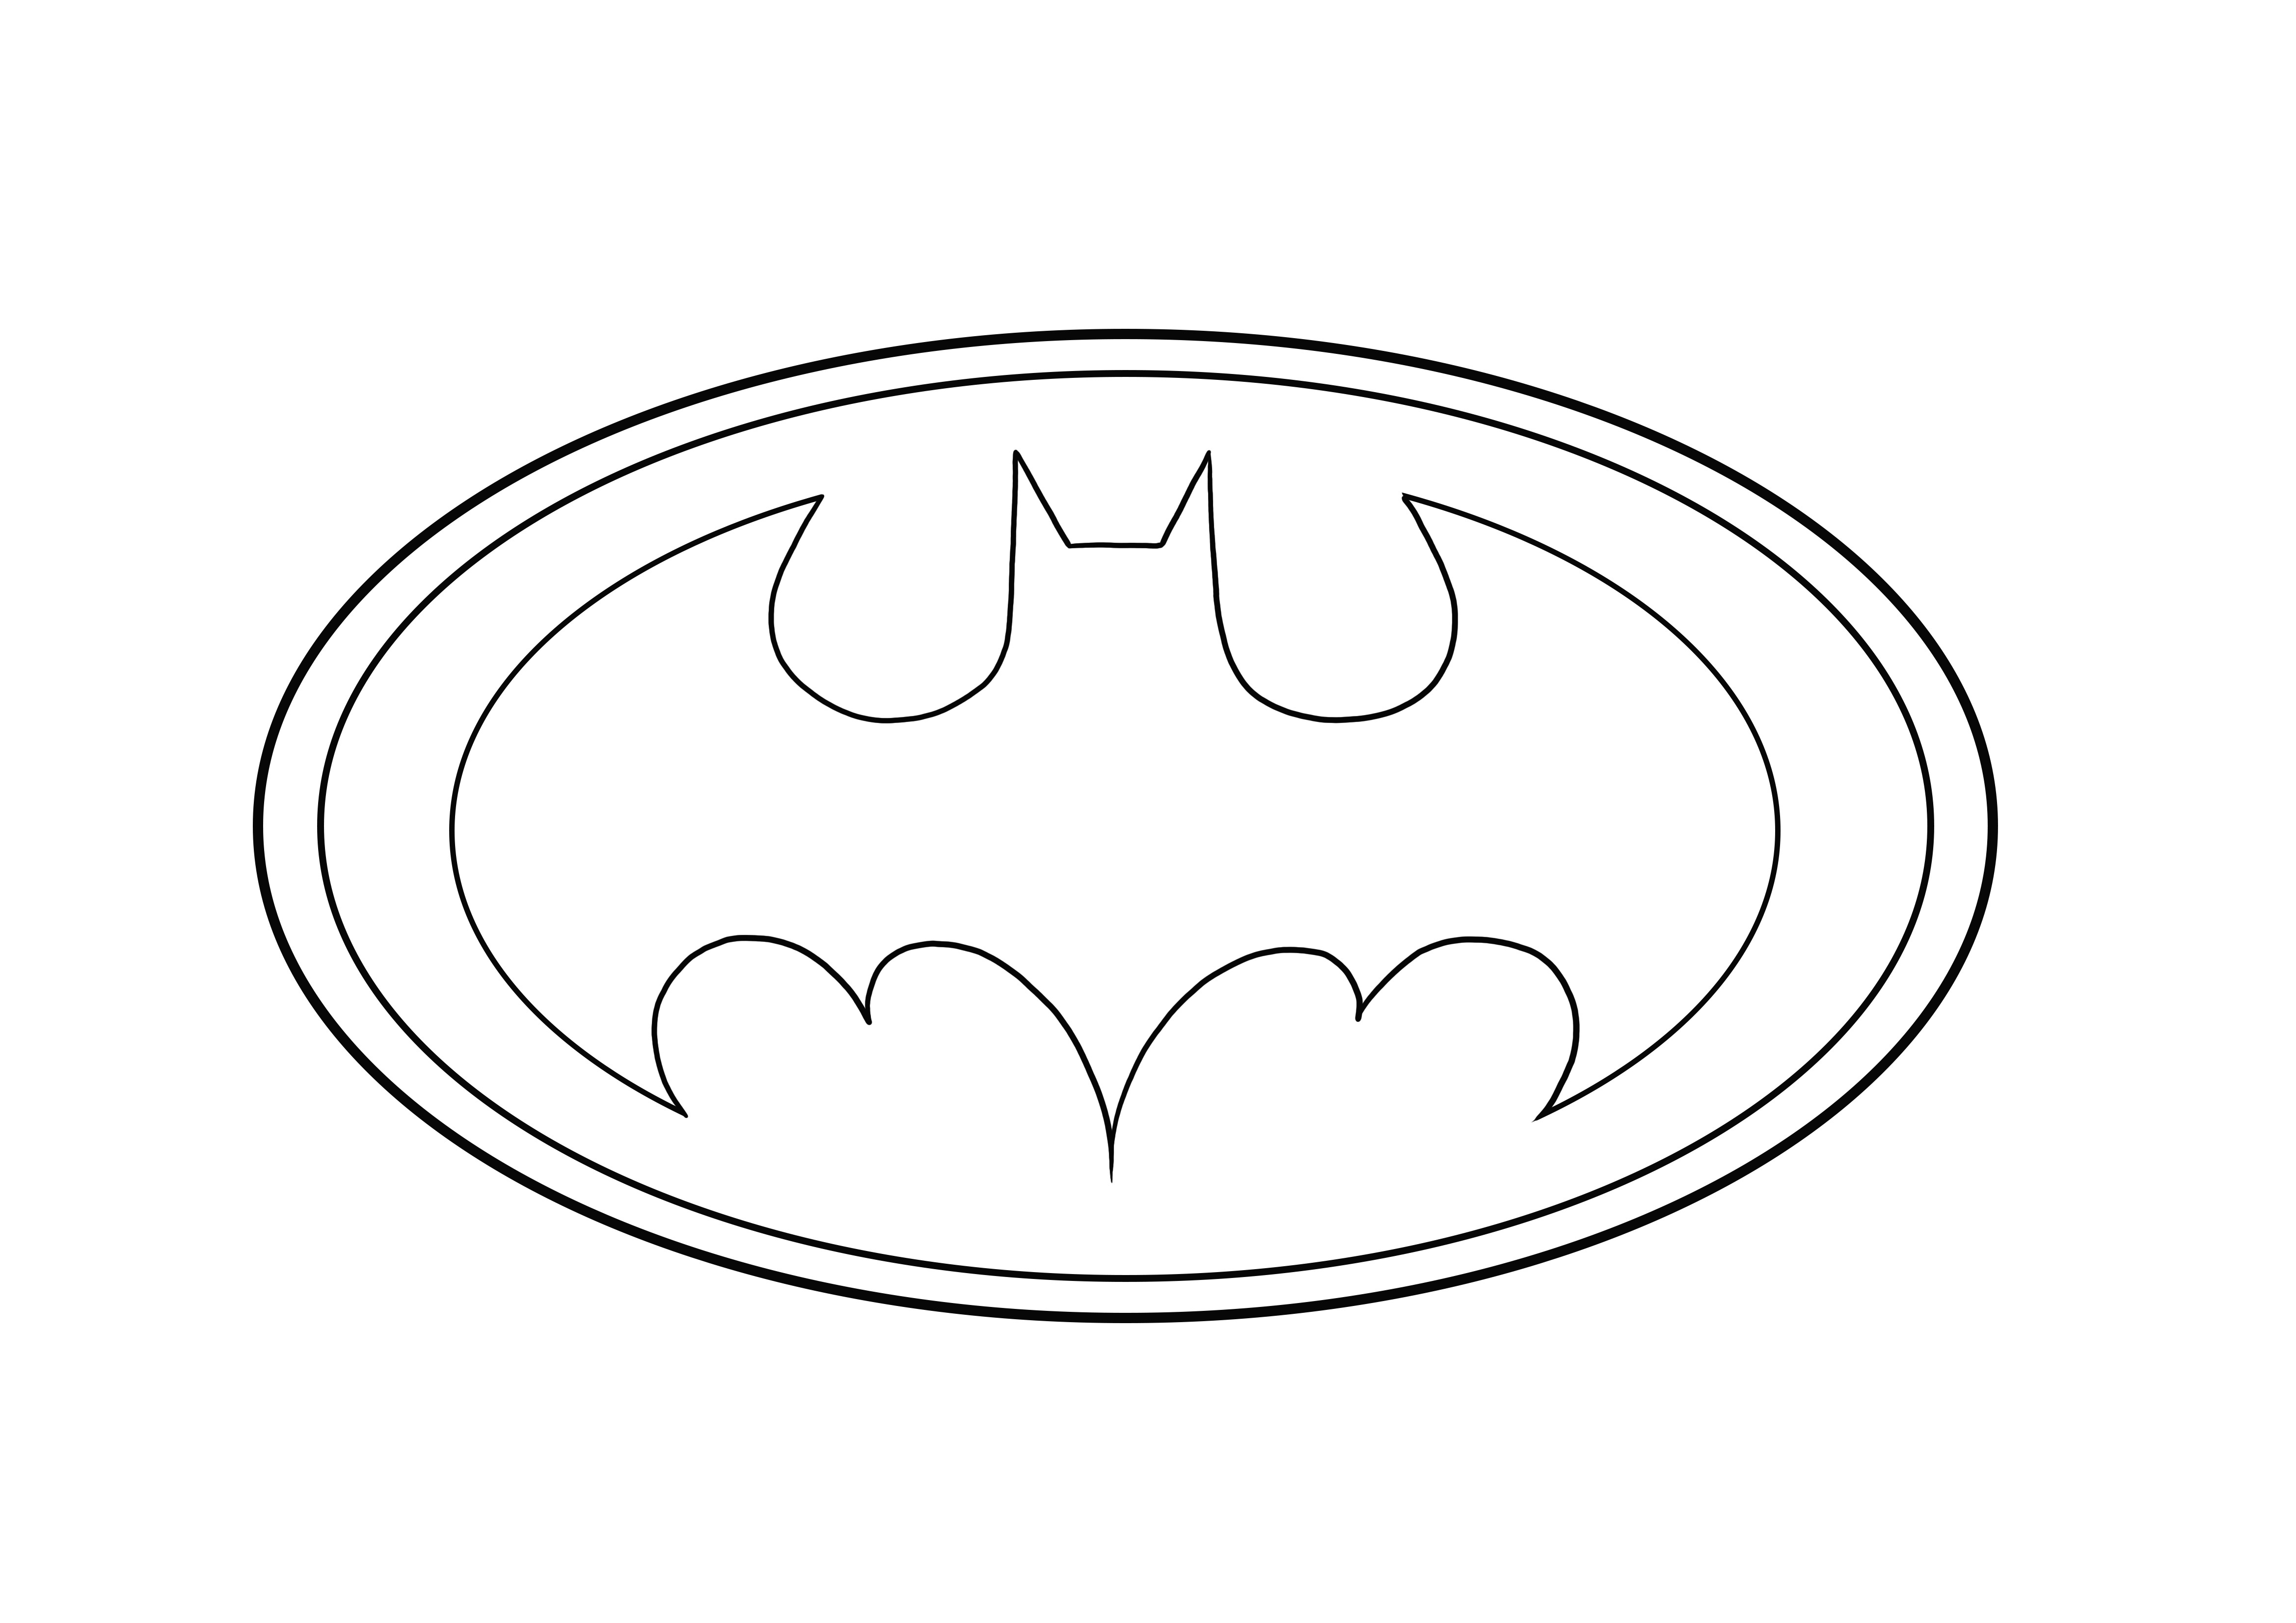 Le logo Batman est prêt à être téléchargé et colorié gratuitement